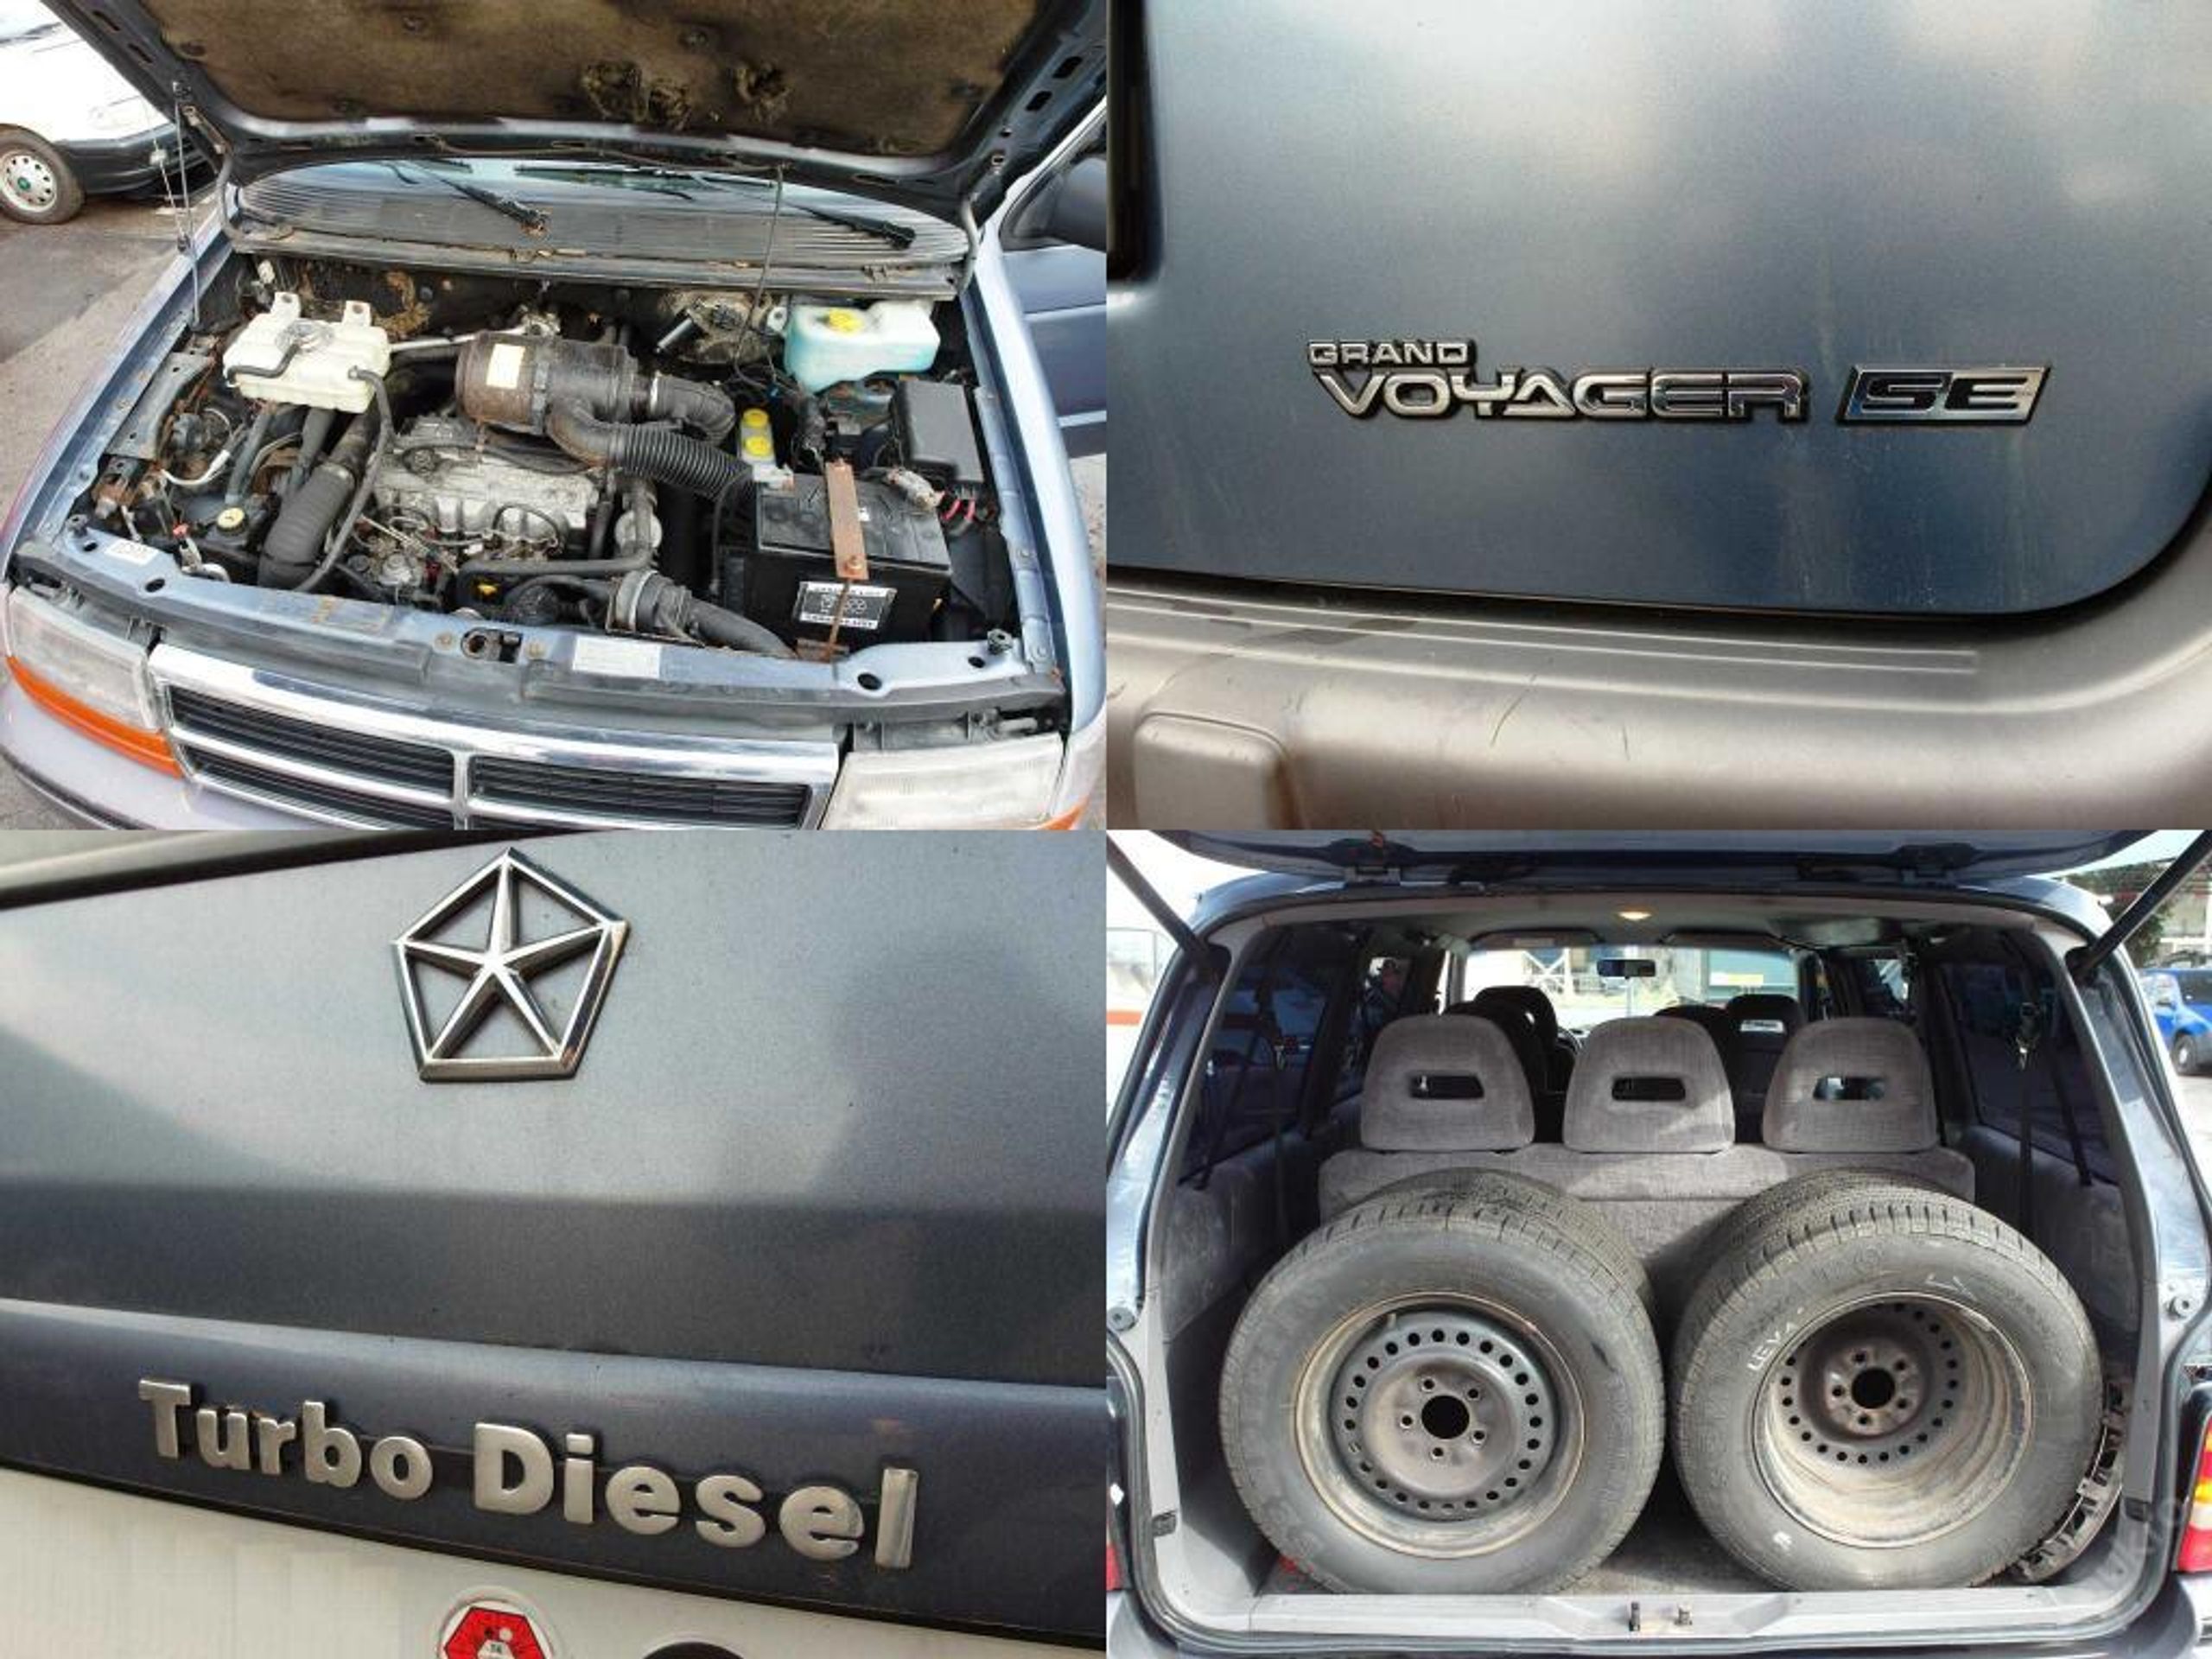 Chrysler Grand Voyager SE 2,5 Turbo Diesel - 6 - GALERIE: Chrysler Grand Voyager SE 2,5 Turbo Diesel (6/6)